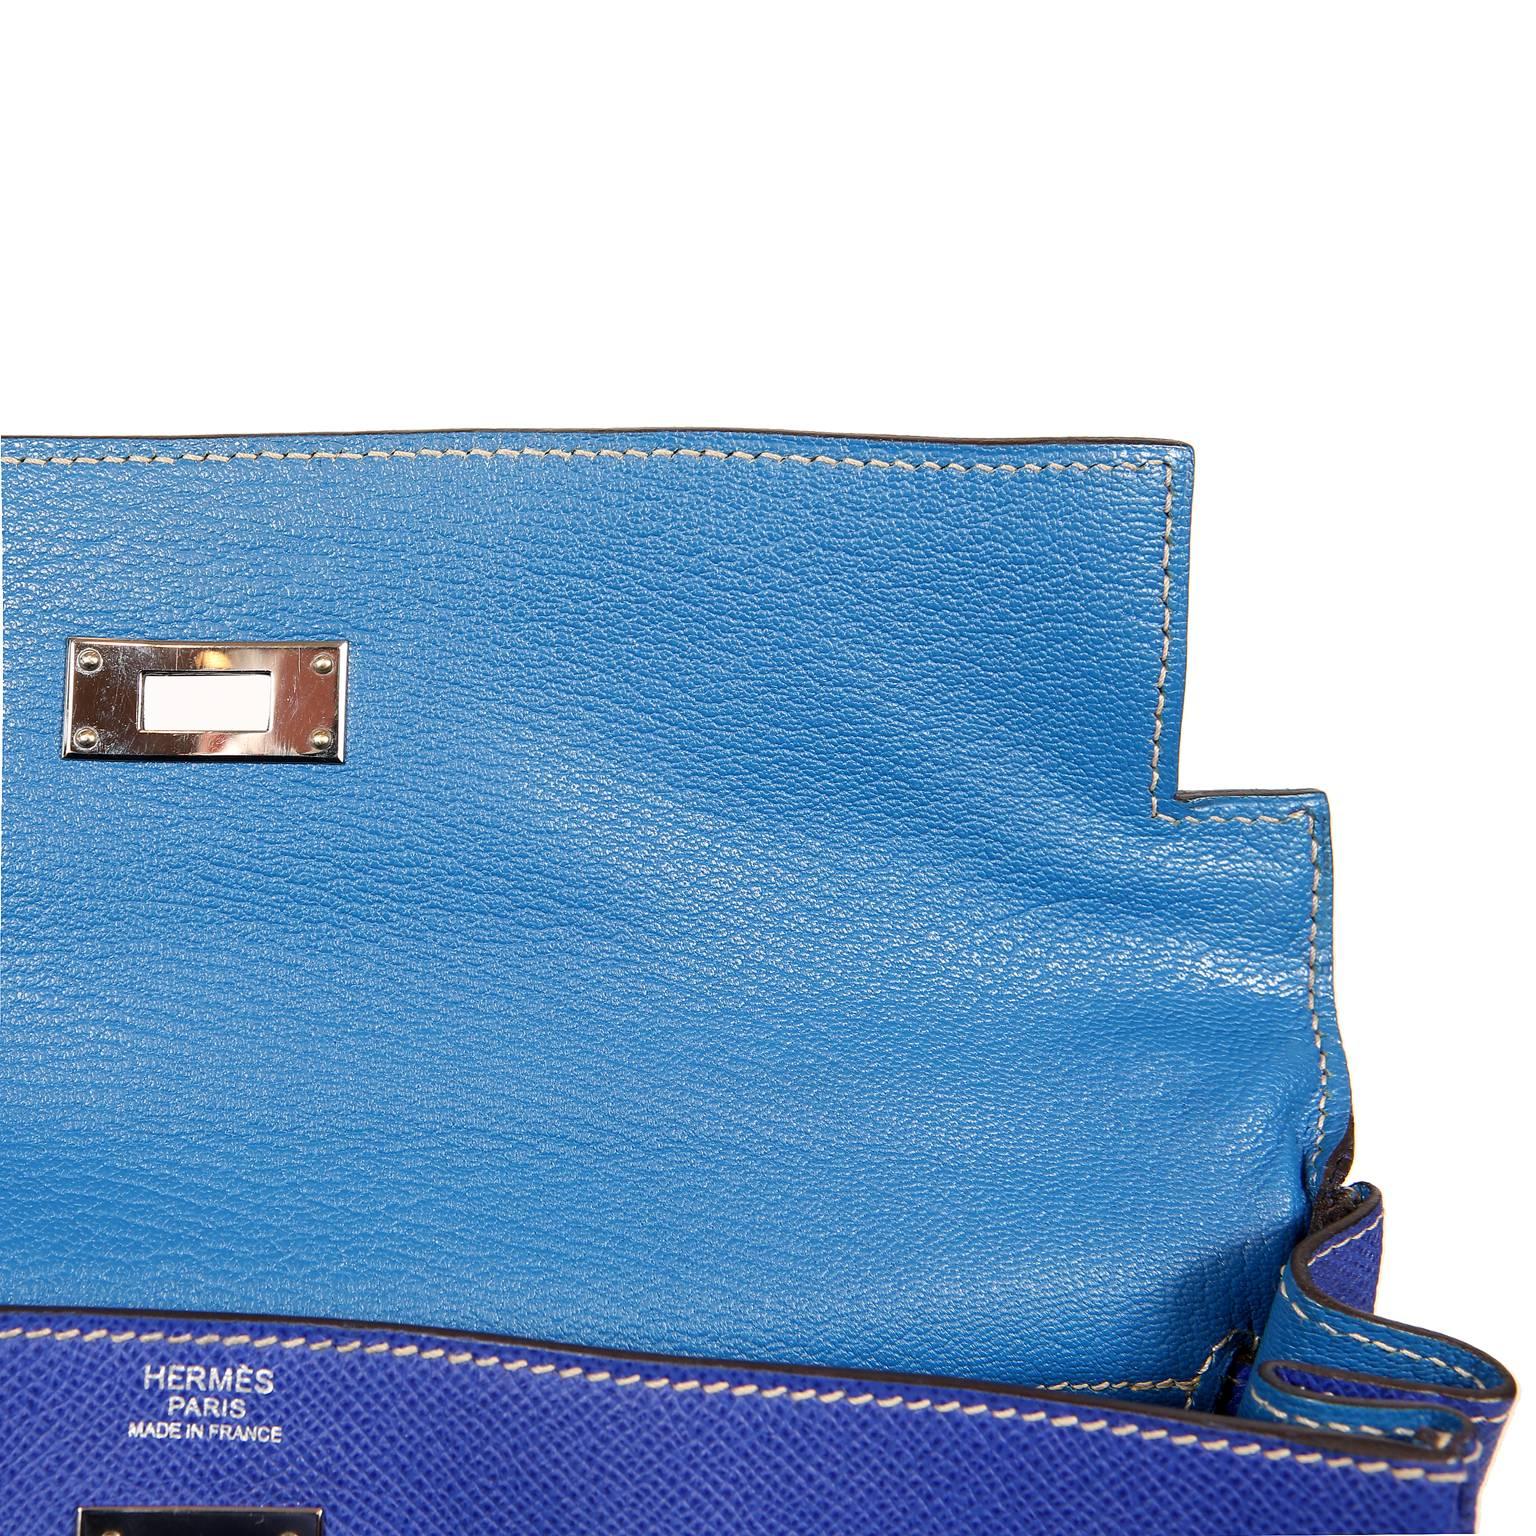 Hermès Bleu Electrique and Mykonos 32 cm Epsom Bi Color Kelly Bag 5